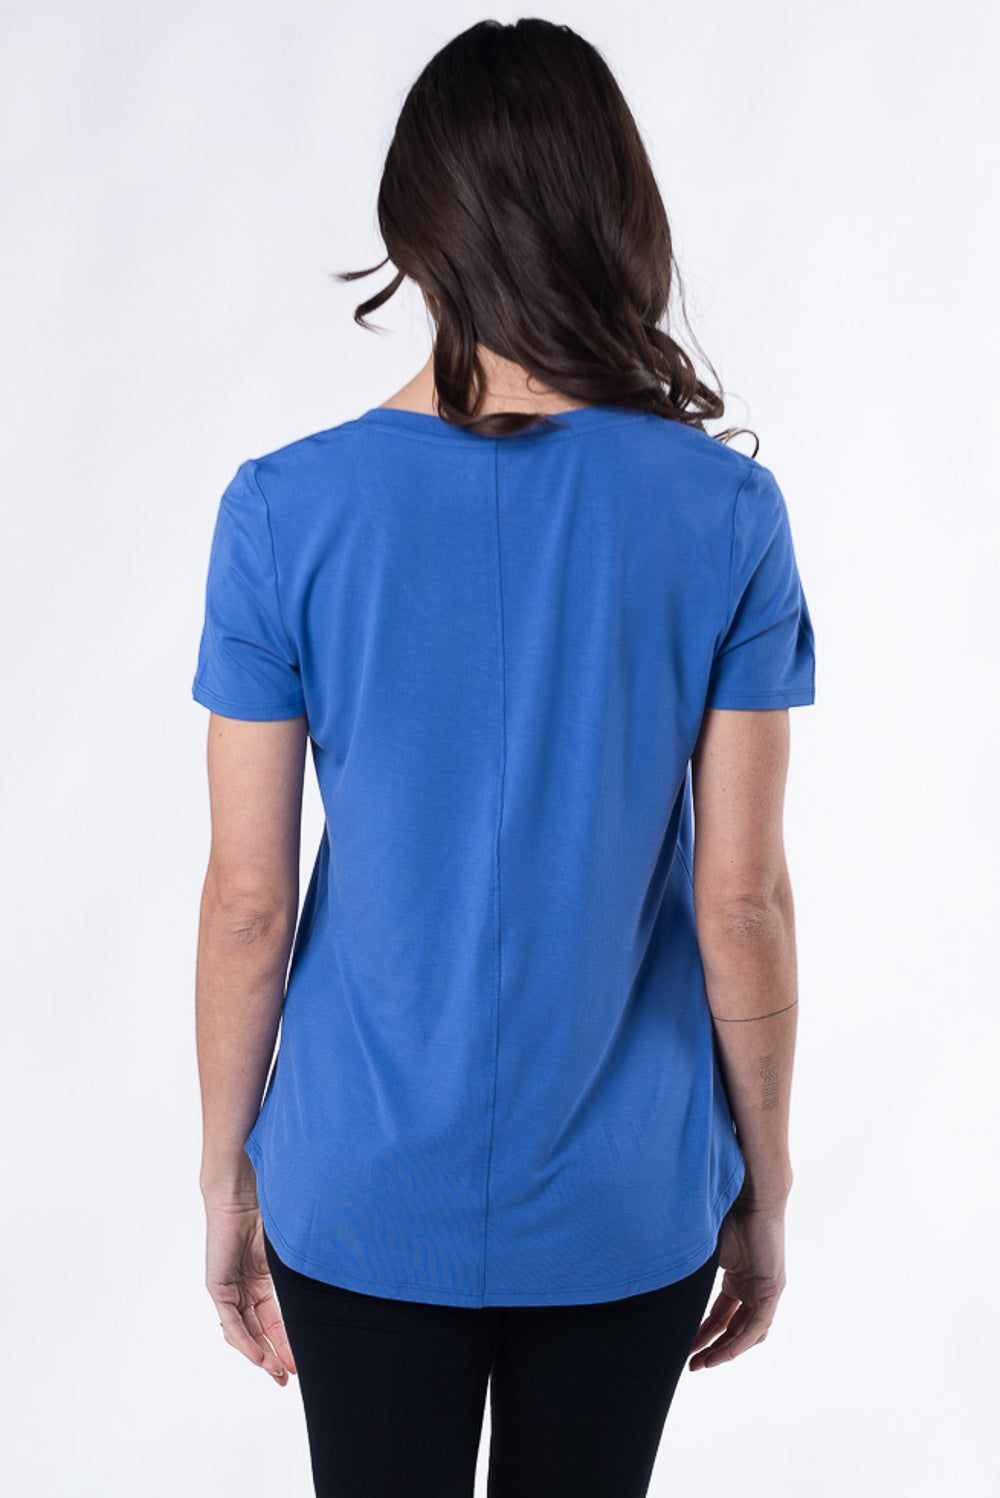 terrera womens ocean blue bamboo t-shirt canada